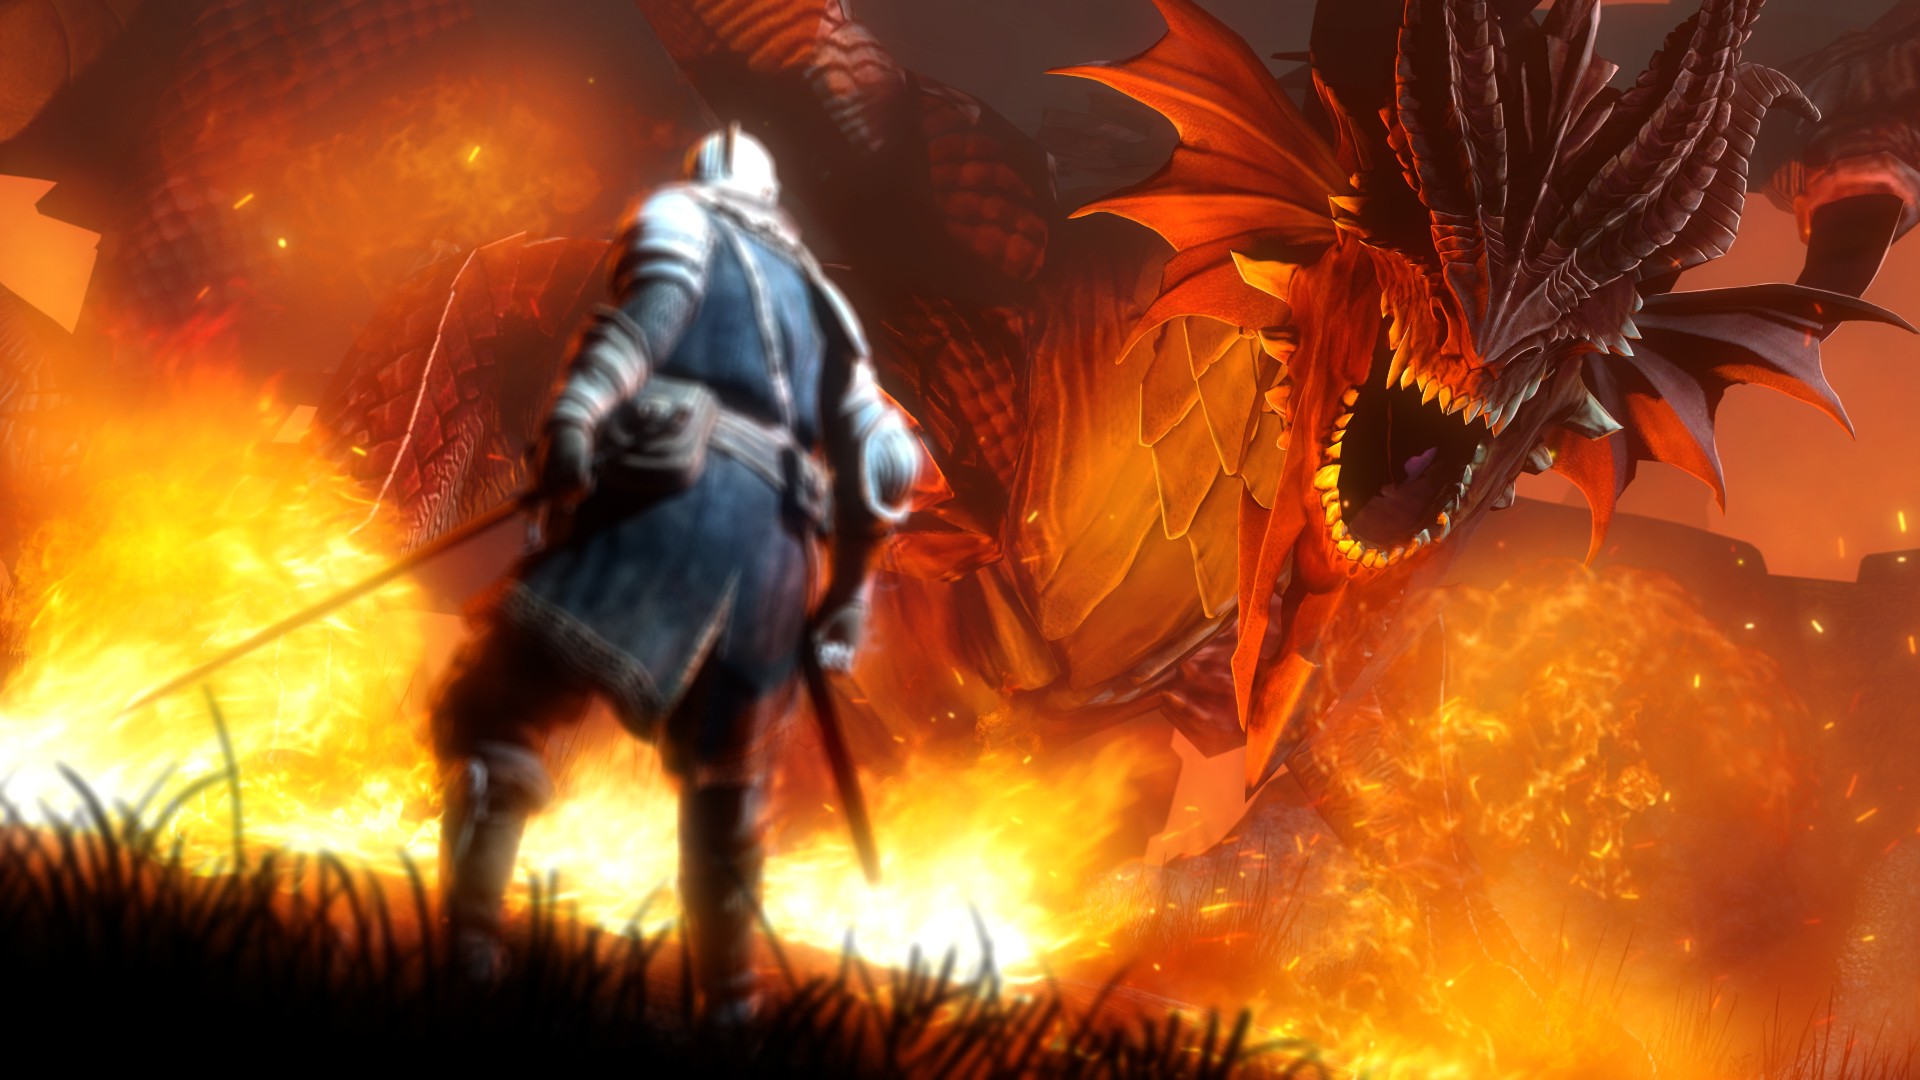 Dark Souls là một trò chơi nổi tiếng với những con rồng đáng sợ. Bây giờ bạn có thể tận hưởng vẻ đẹp đáng kinh ngạc của game này bằng hình nền Dark Souls Dragon. Sự đậm nét và chi tiết của hình ảnh sẽ làm cho bạn liên tưởng ngay đến sức mạnh và uy lực của các con rồng trong trò chơi.